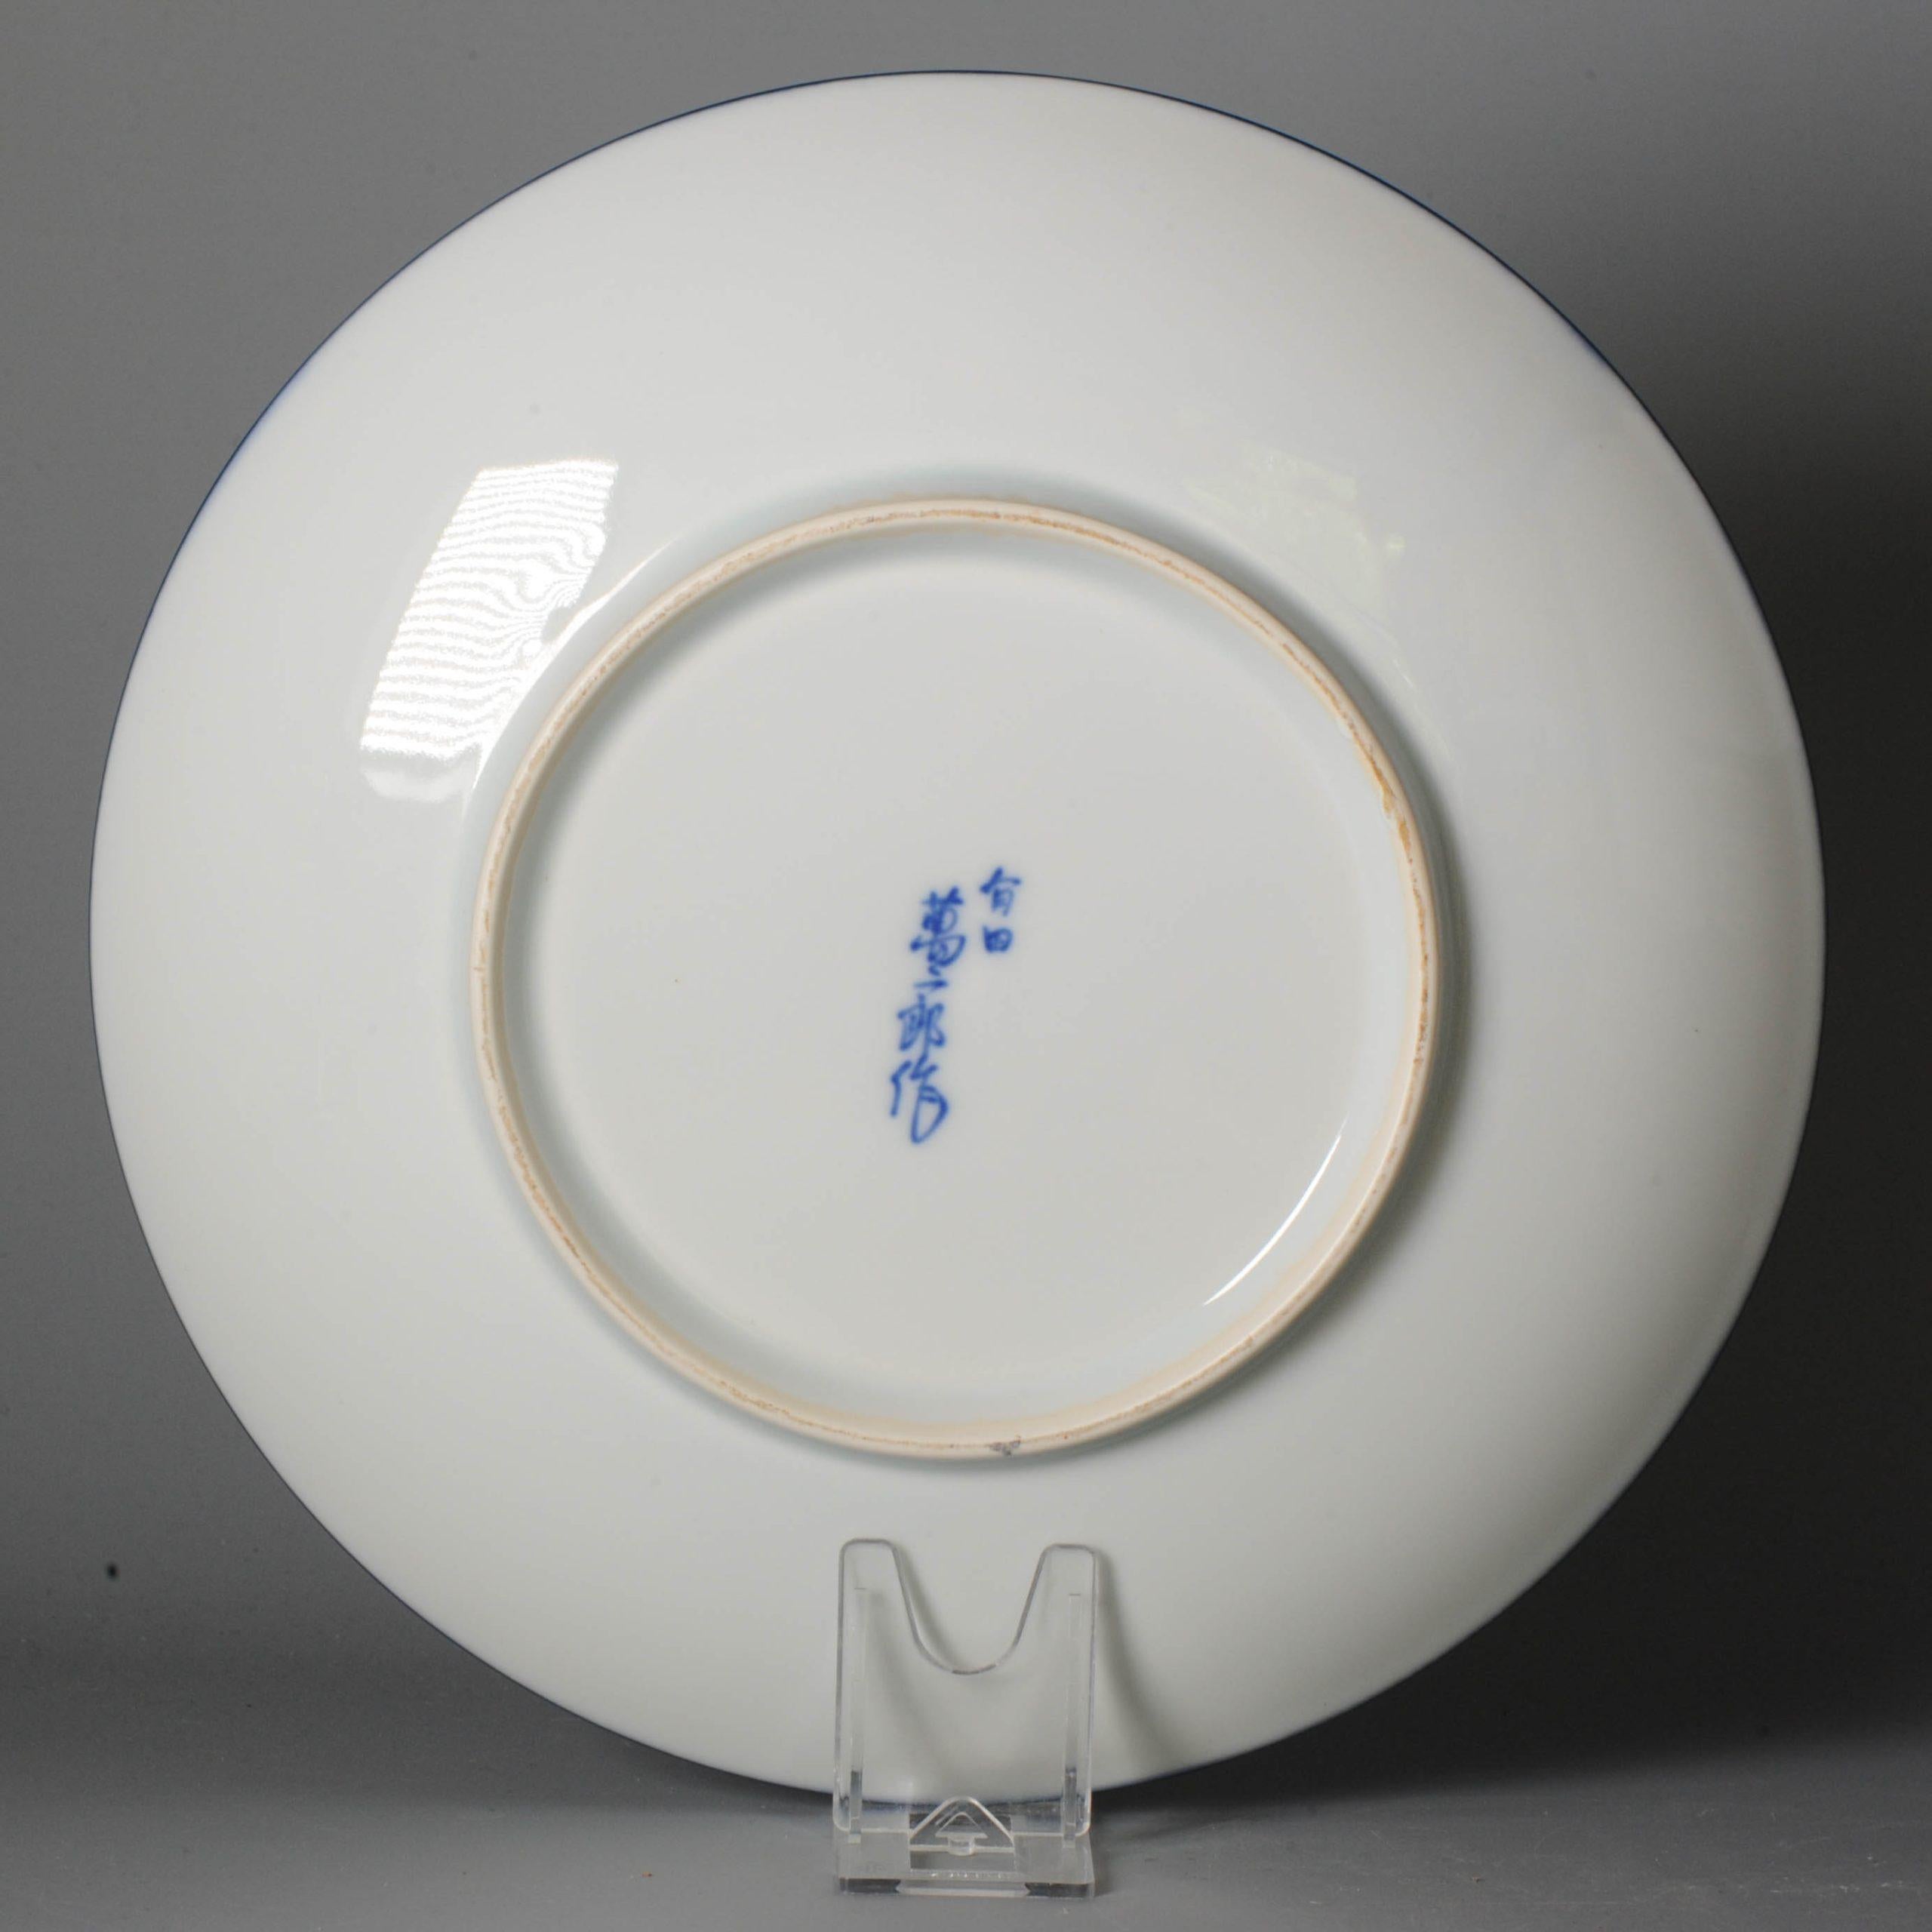 Magnifique et inhabituelle assiette en porcelaine d'Arita représentant un couple de souris avec des bottes de paille. Signé en bleu sous glaçure sur la base. Intéressante décoration douce avec des poils de souris incisés et joliment détaillés sous